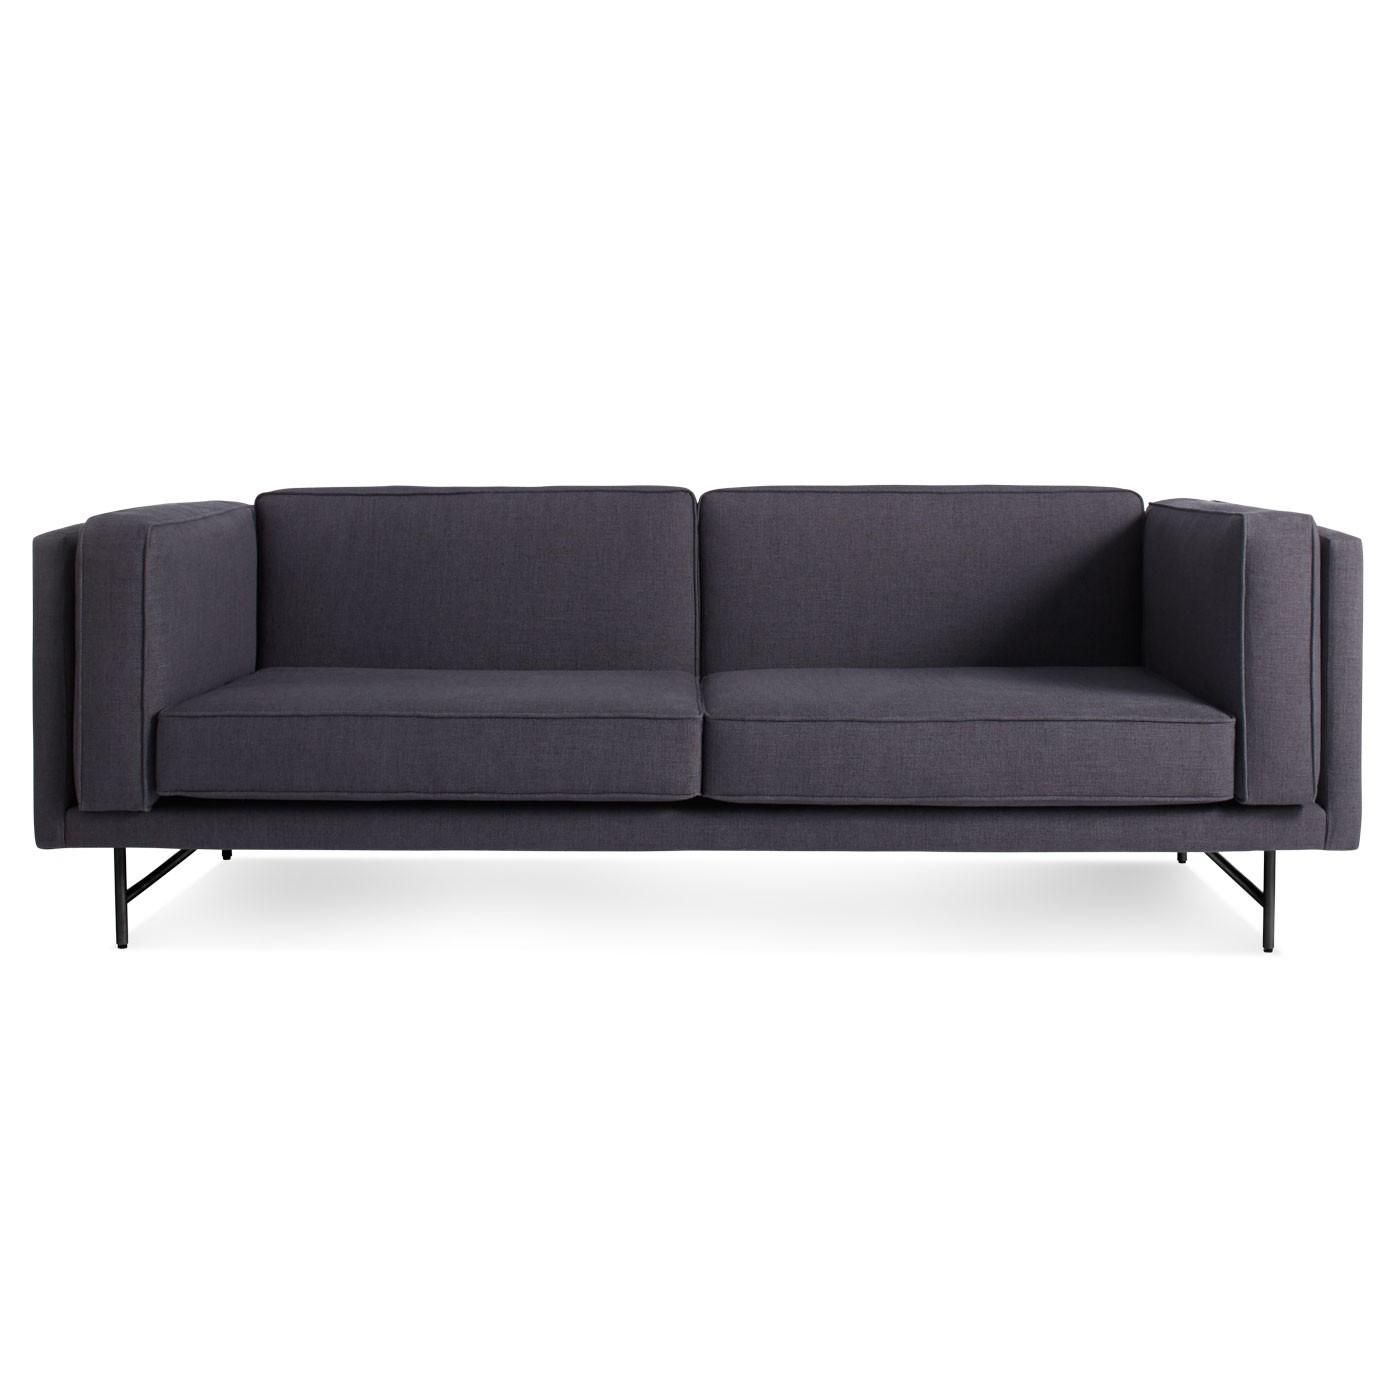 Bank 80" Low Profile Sofa – Deep Seat Sofas | Blu Dot Pertaining To Blu Dot Sofas (View 6 of 20)